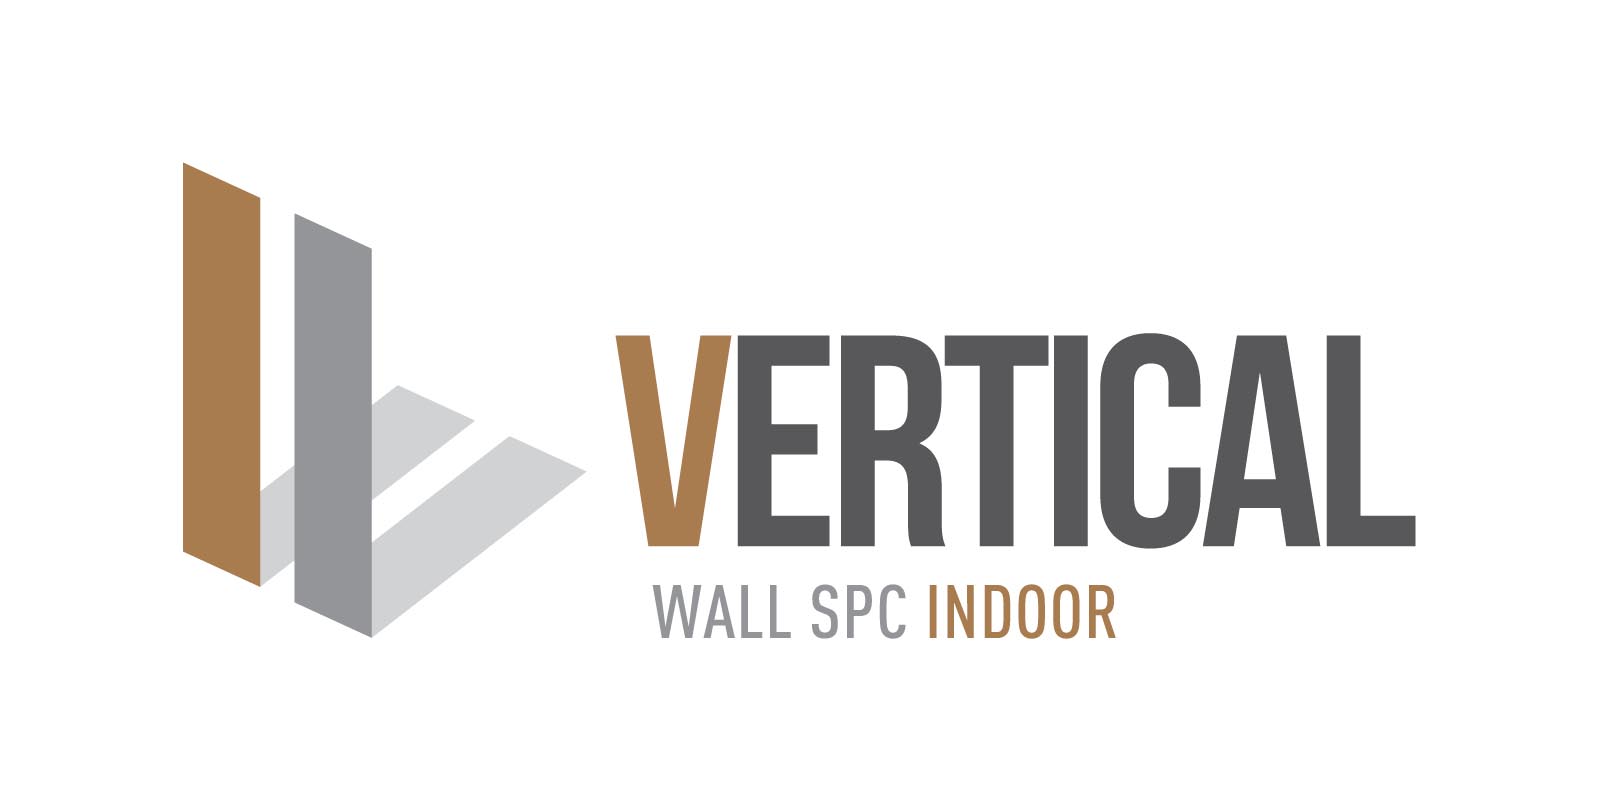 wall_spc_indoor_vertical